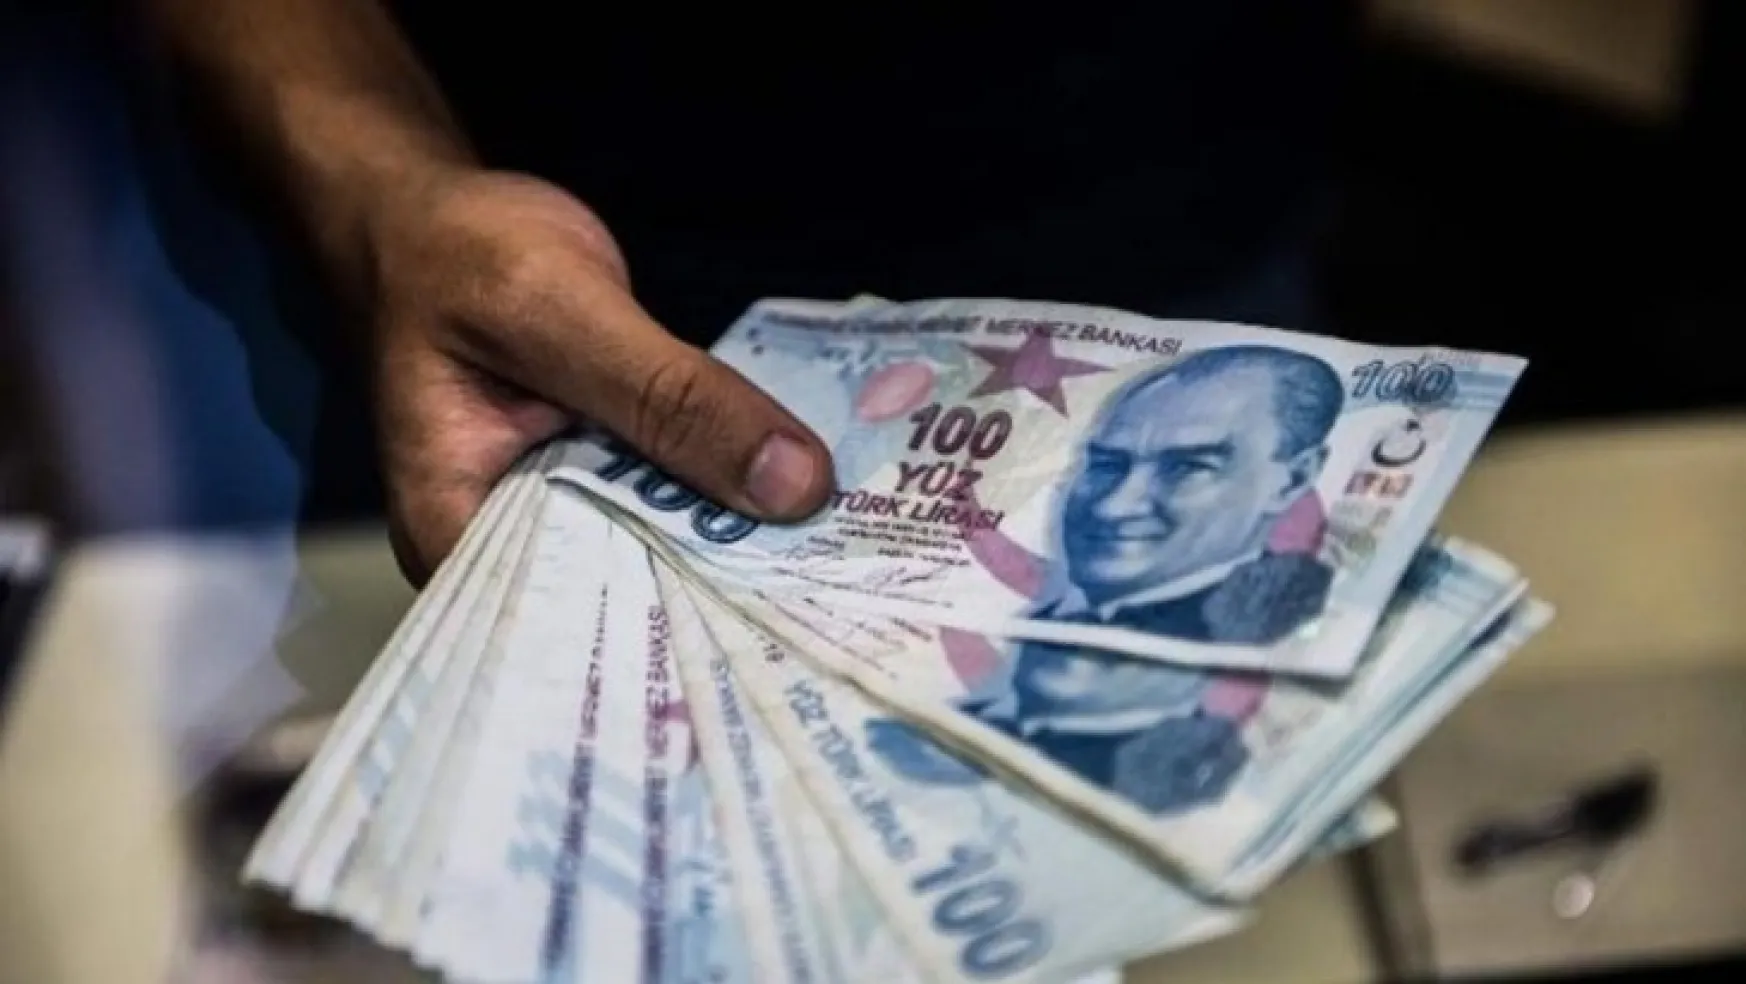 Antalya'ya Nefes Aldırcak 100 Milyon Liraya Kadar Kredi